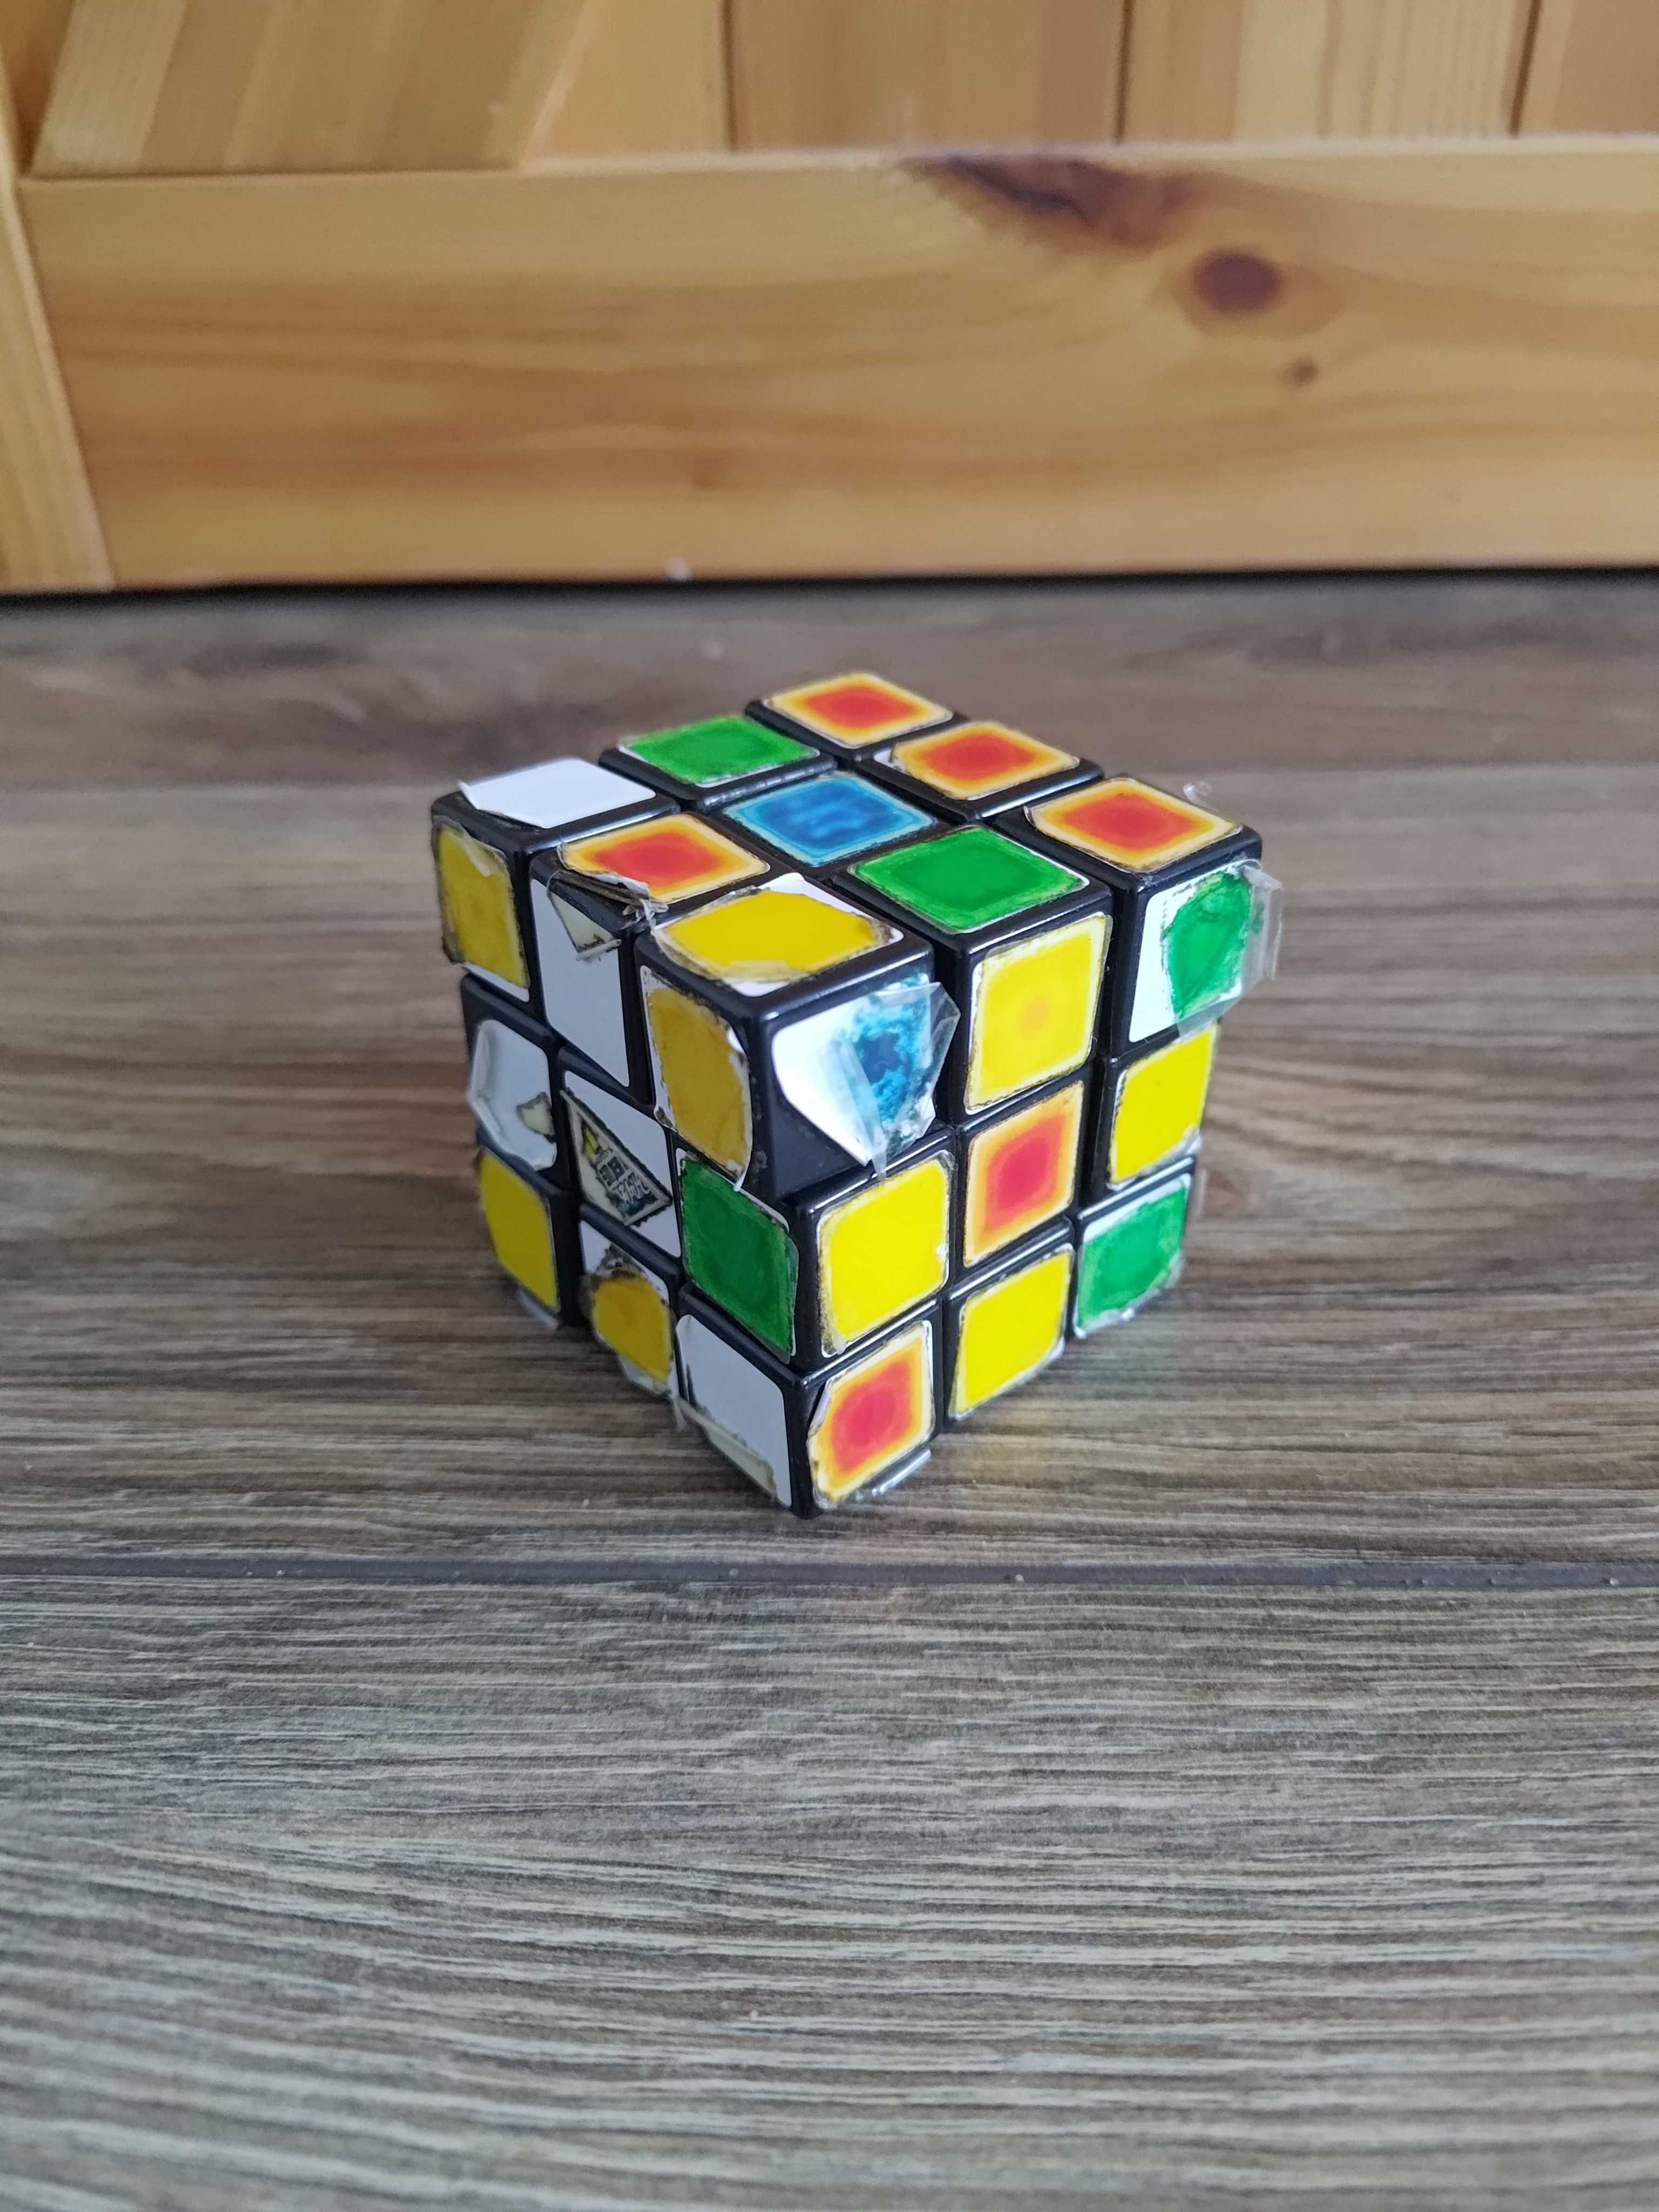 TANIO kostka Rubika na części